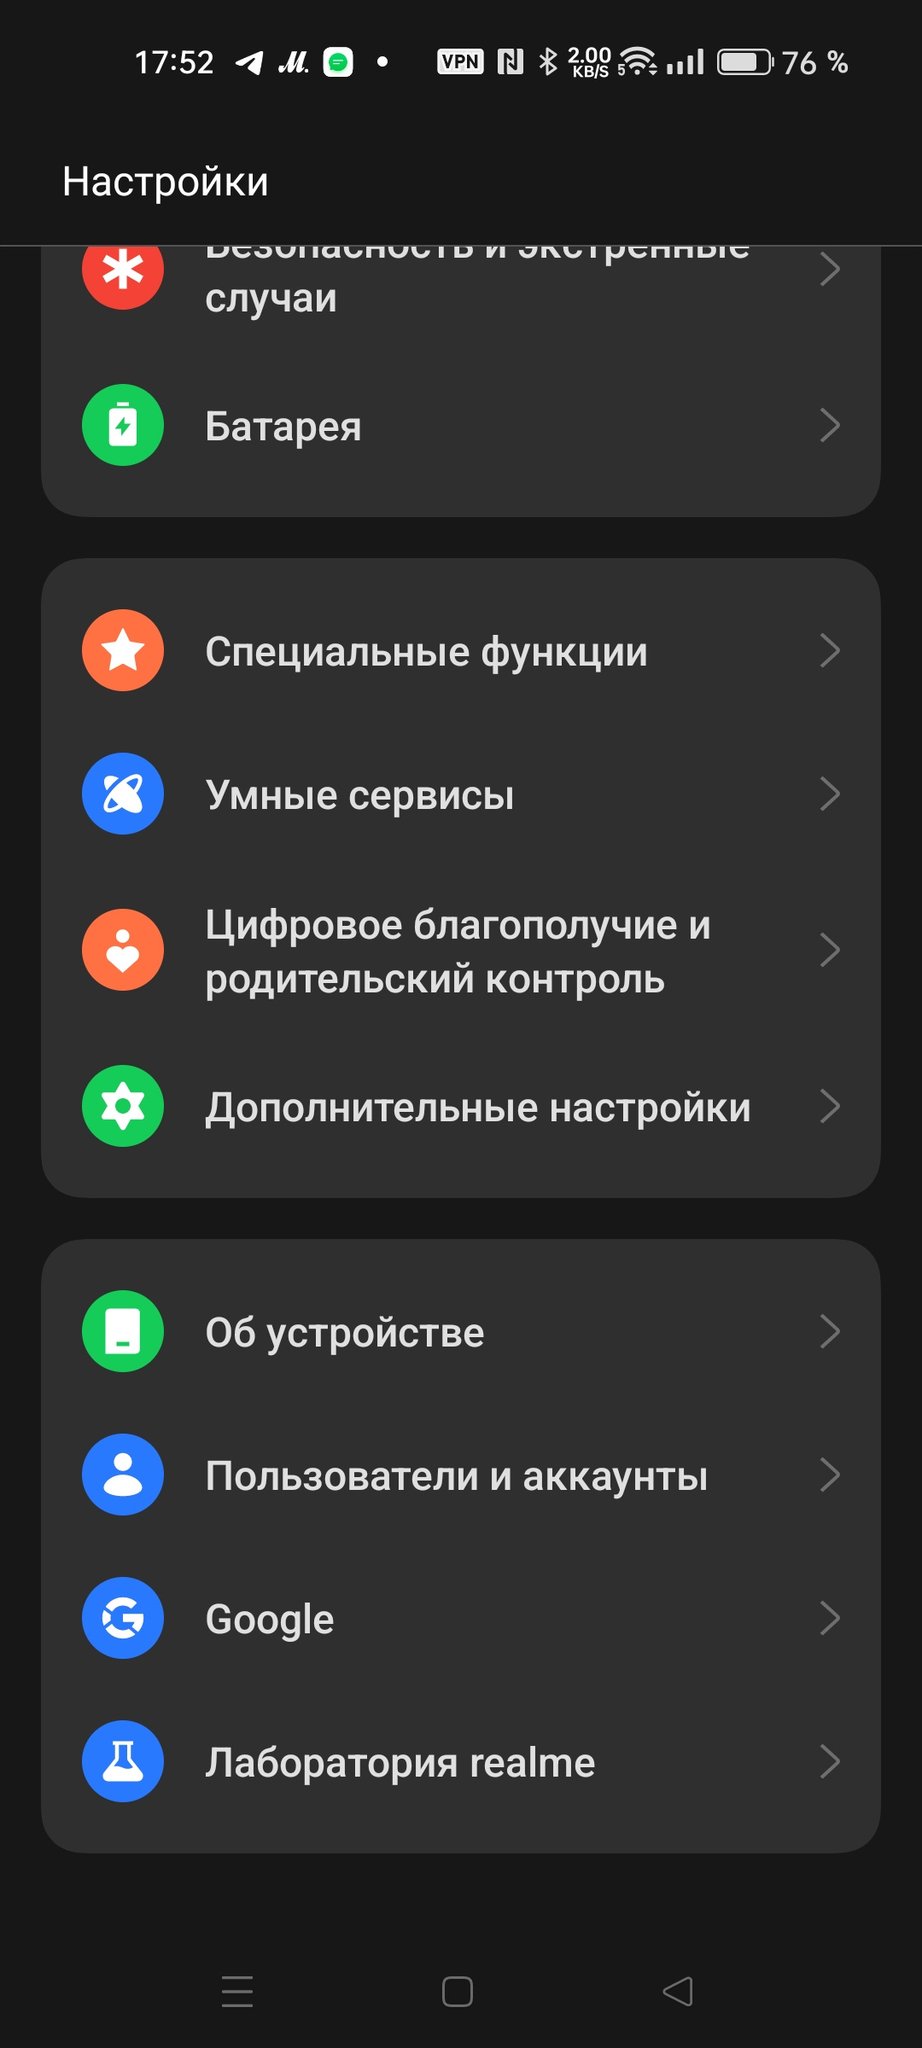 Как увеличить скорость интернета на телефоне - luchistii-sudak.ru